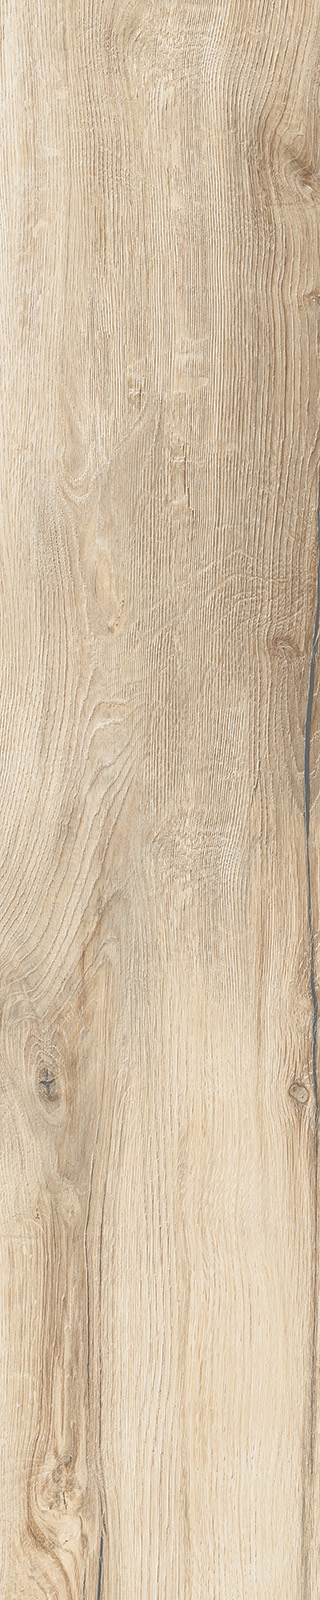 Timber Lux Ecru